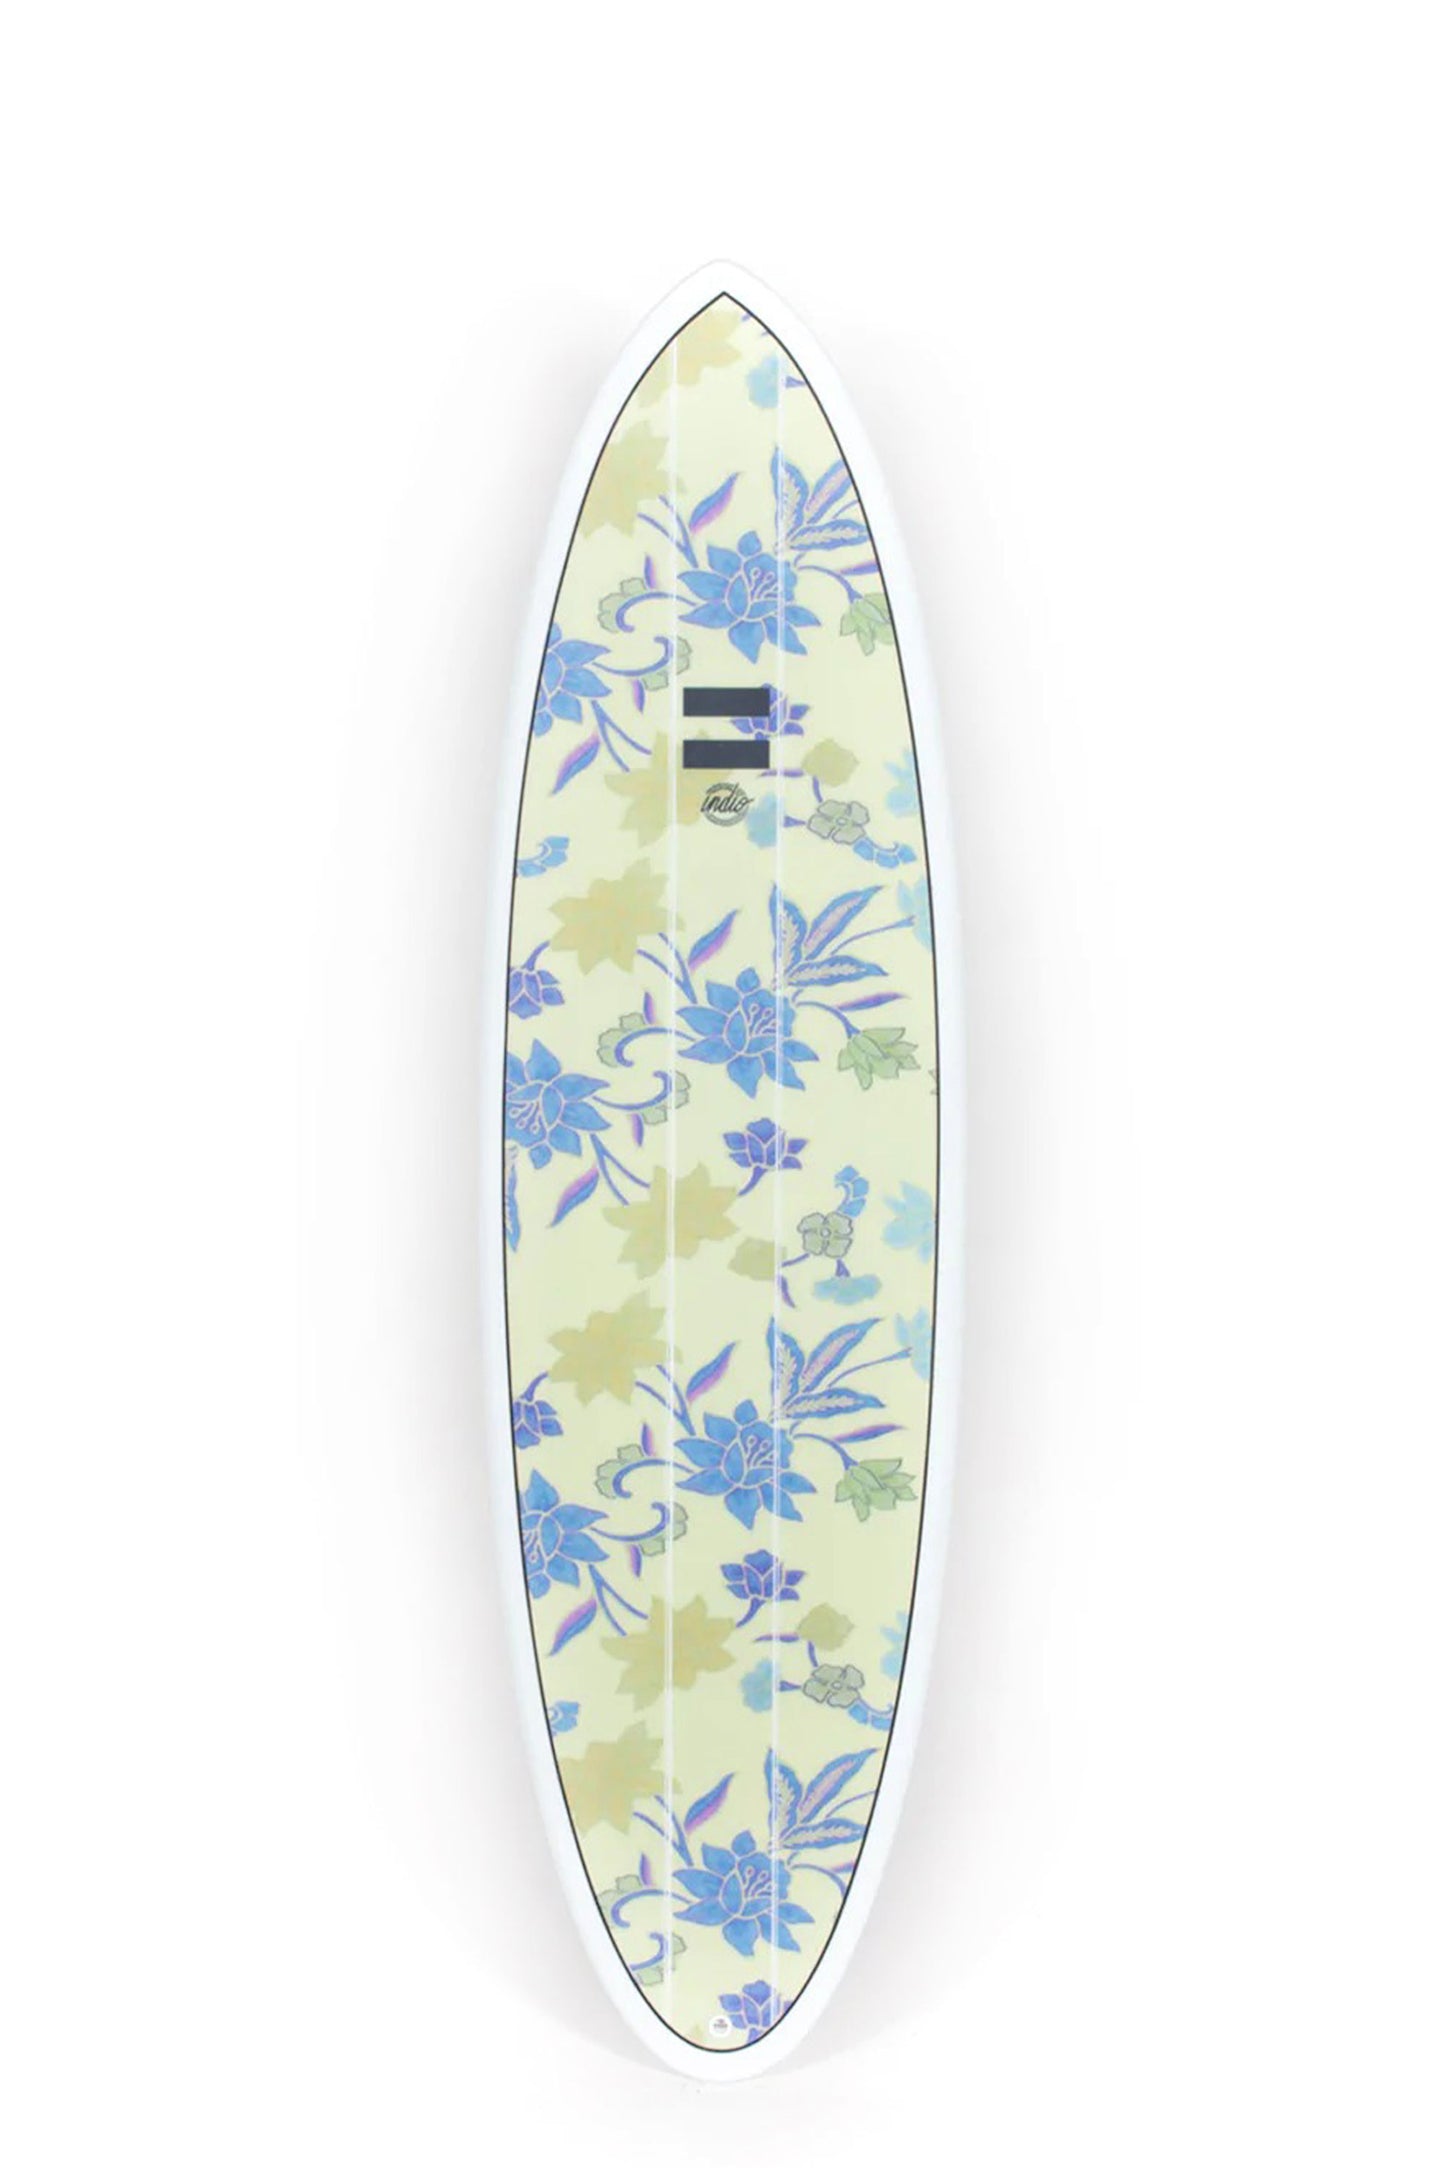 Pukas Surf Shop - Indio Endurance - THE EGG Flowers - 7´10" x 23 1/4 x 3 - 64L